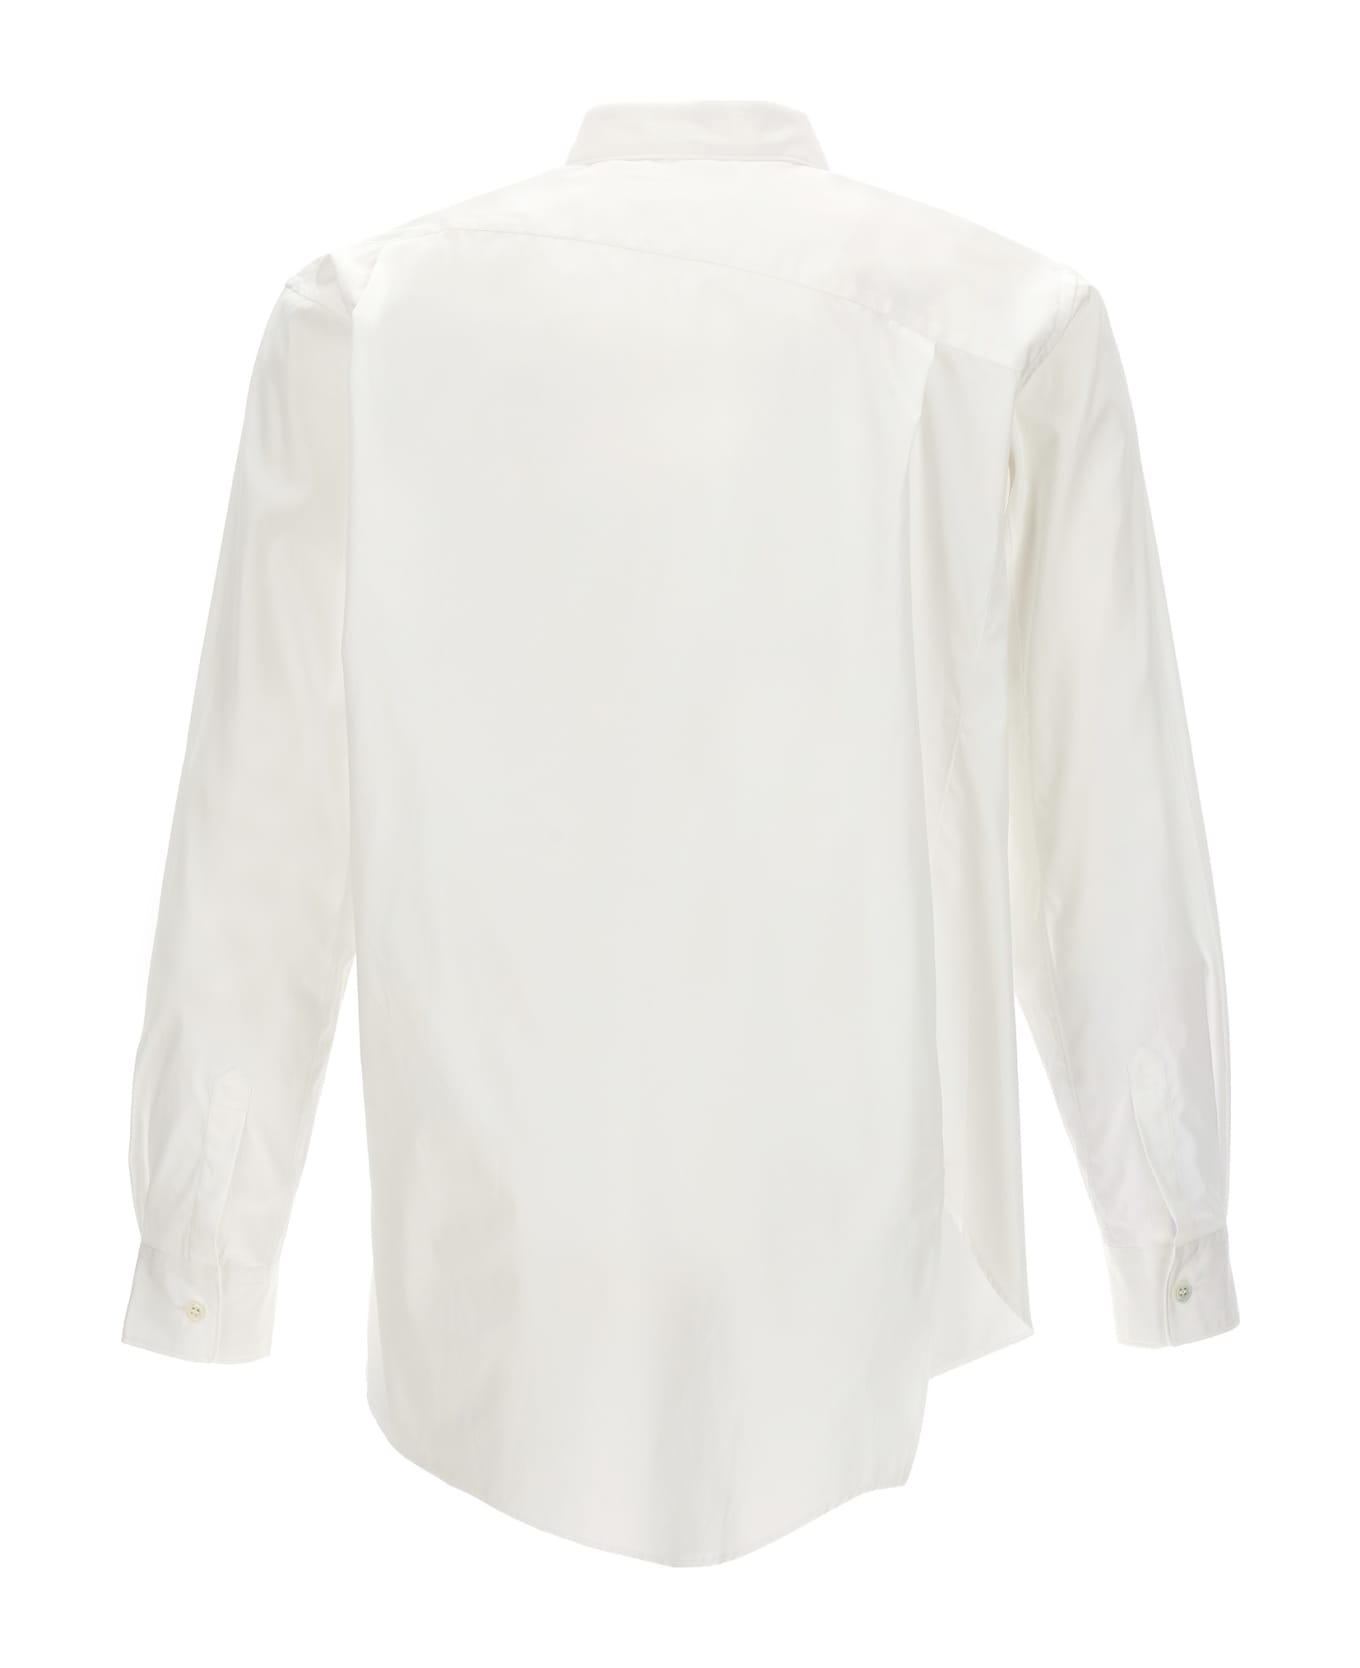 Comme des Garçons X Lacoste Shirt - WHITE シャツ